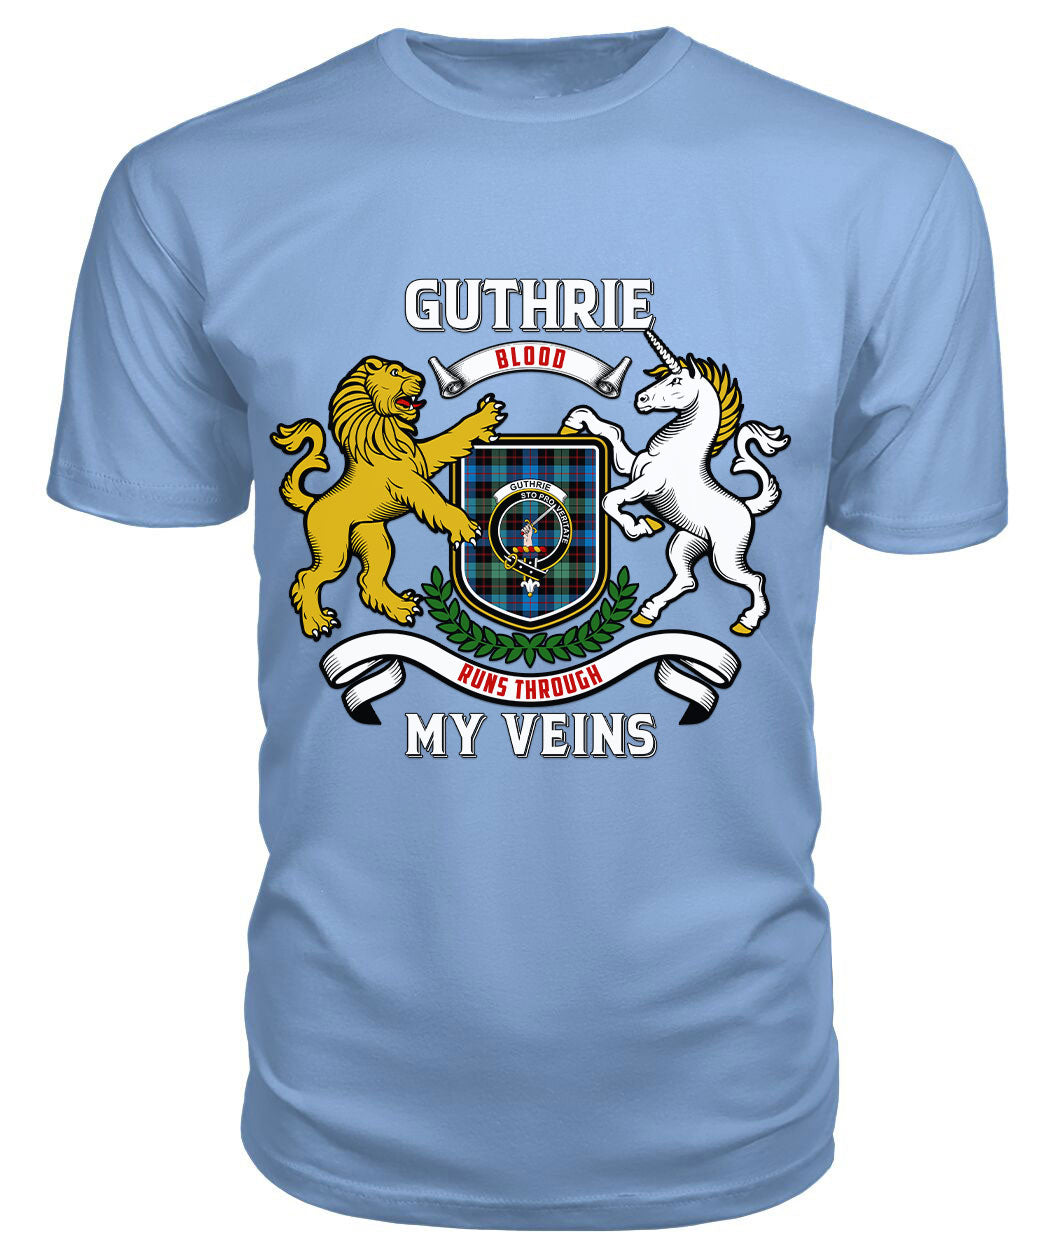 Guthrie Ancient Tartan Crest 2D T-shirt - Blood Runs Through My Veins Style